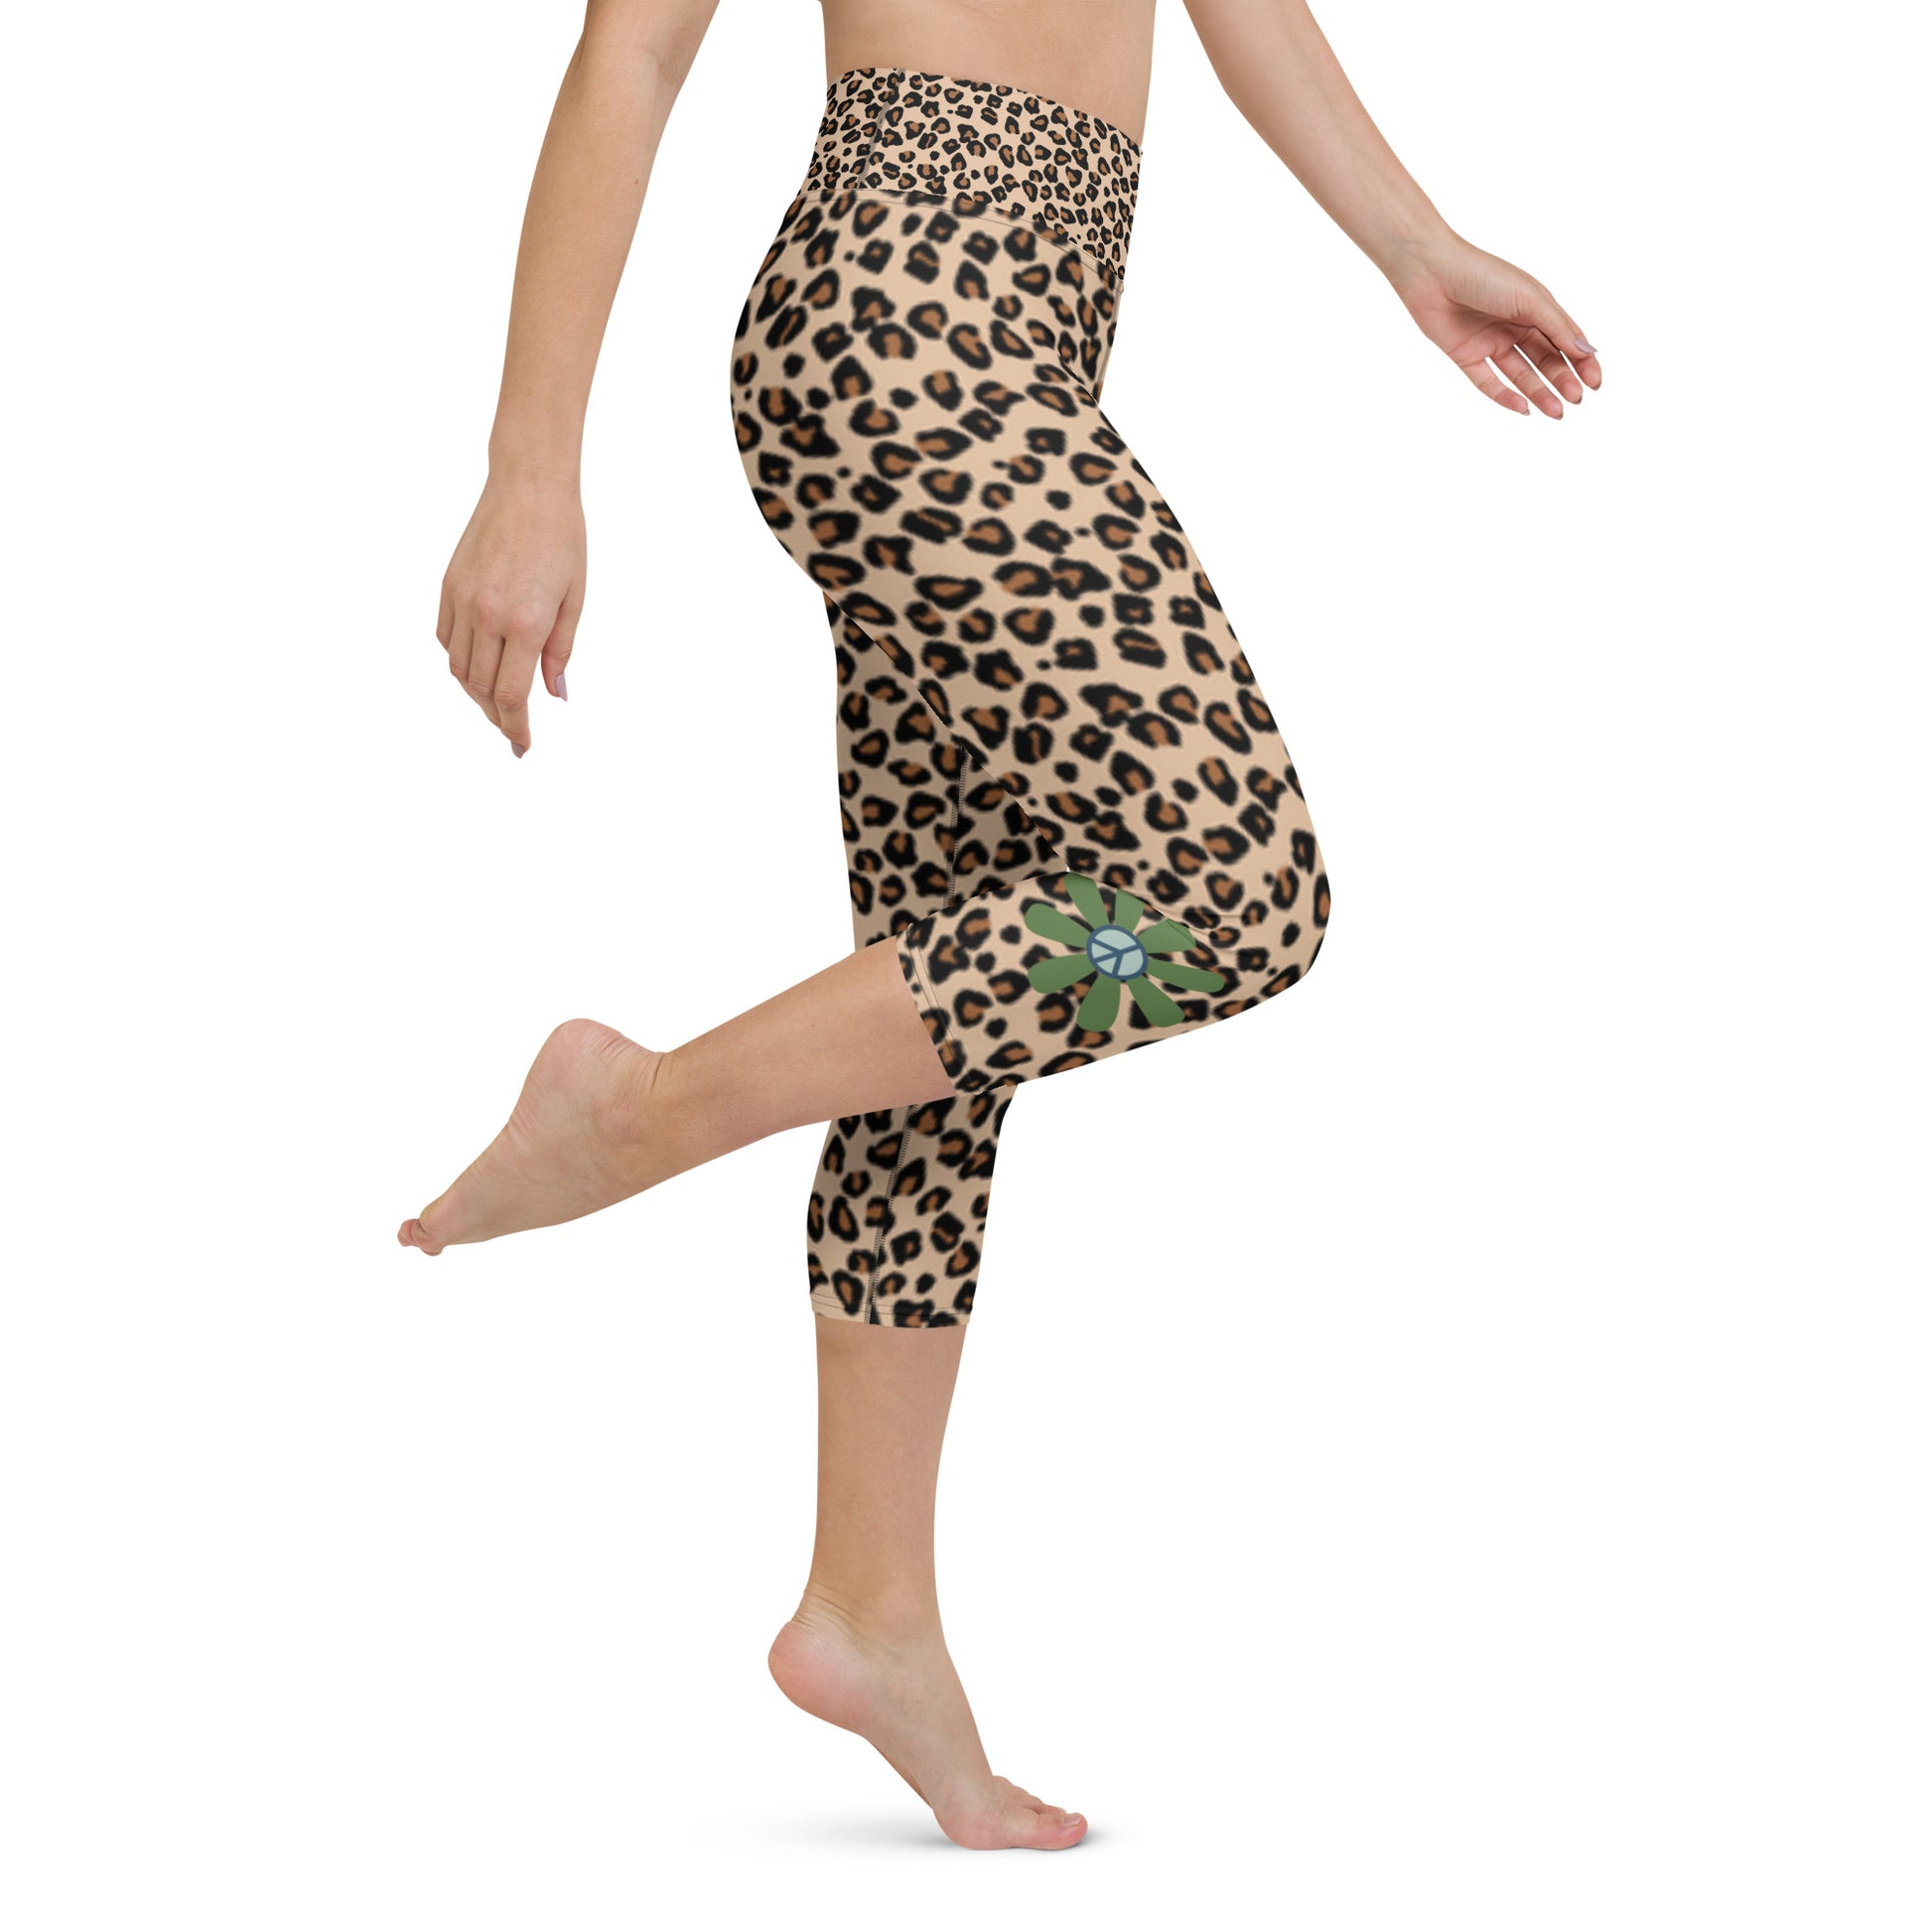 Yoga Capri Leggings Cheetah with Flower - DMD Bags